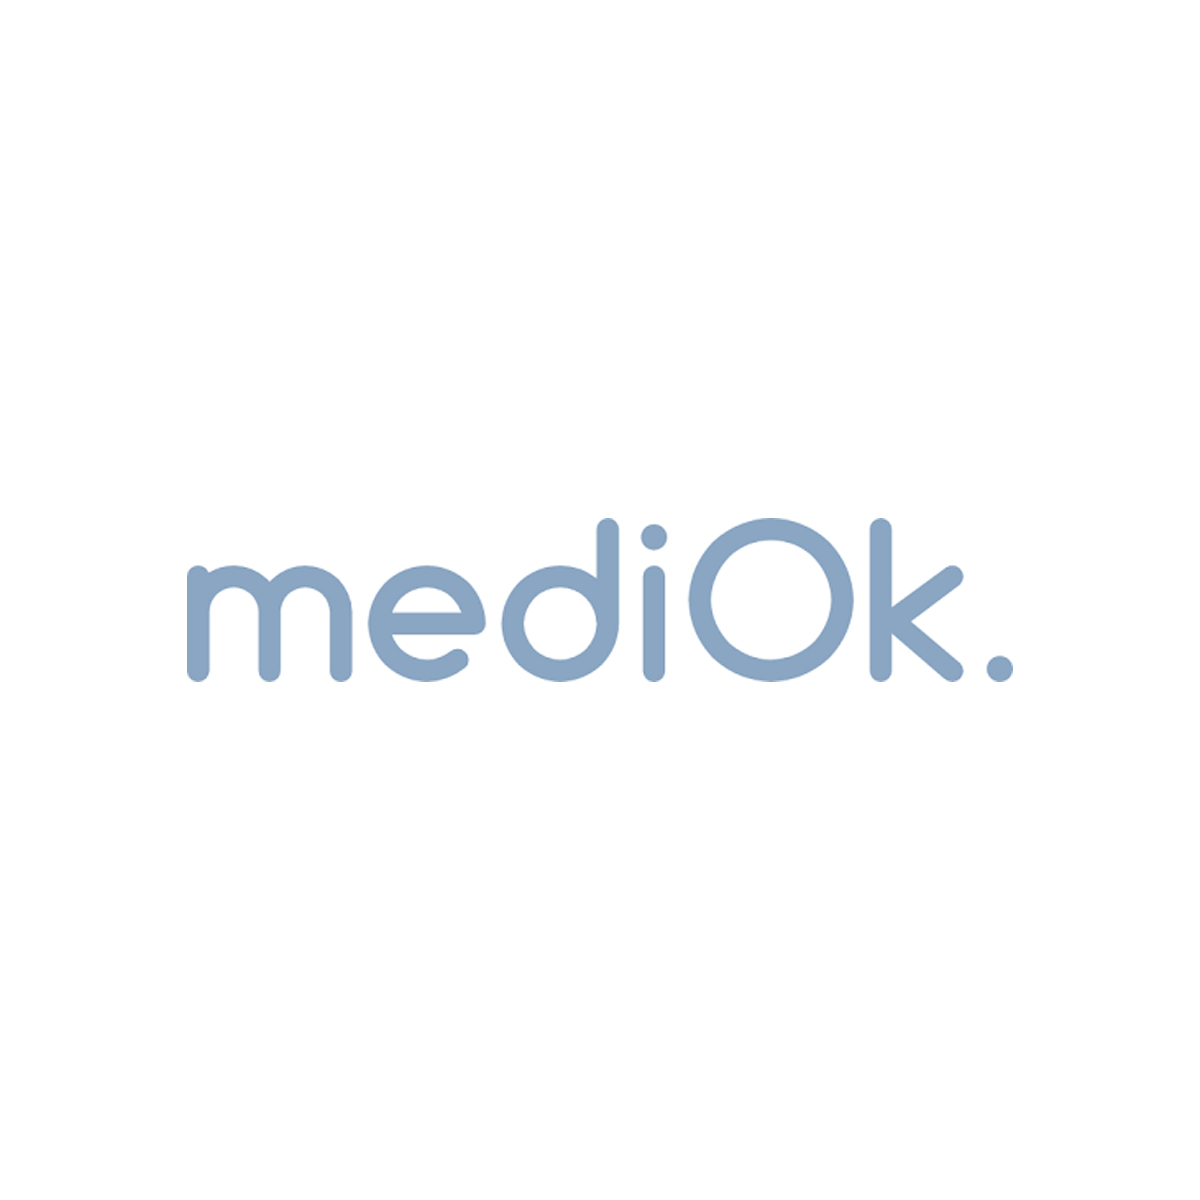 MediOk